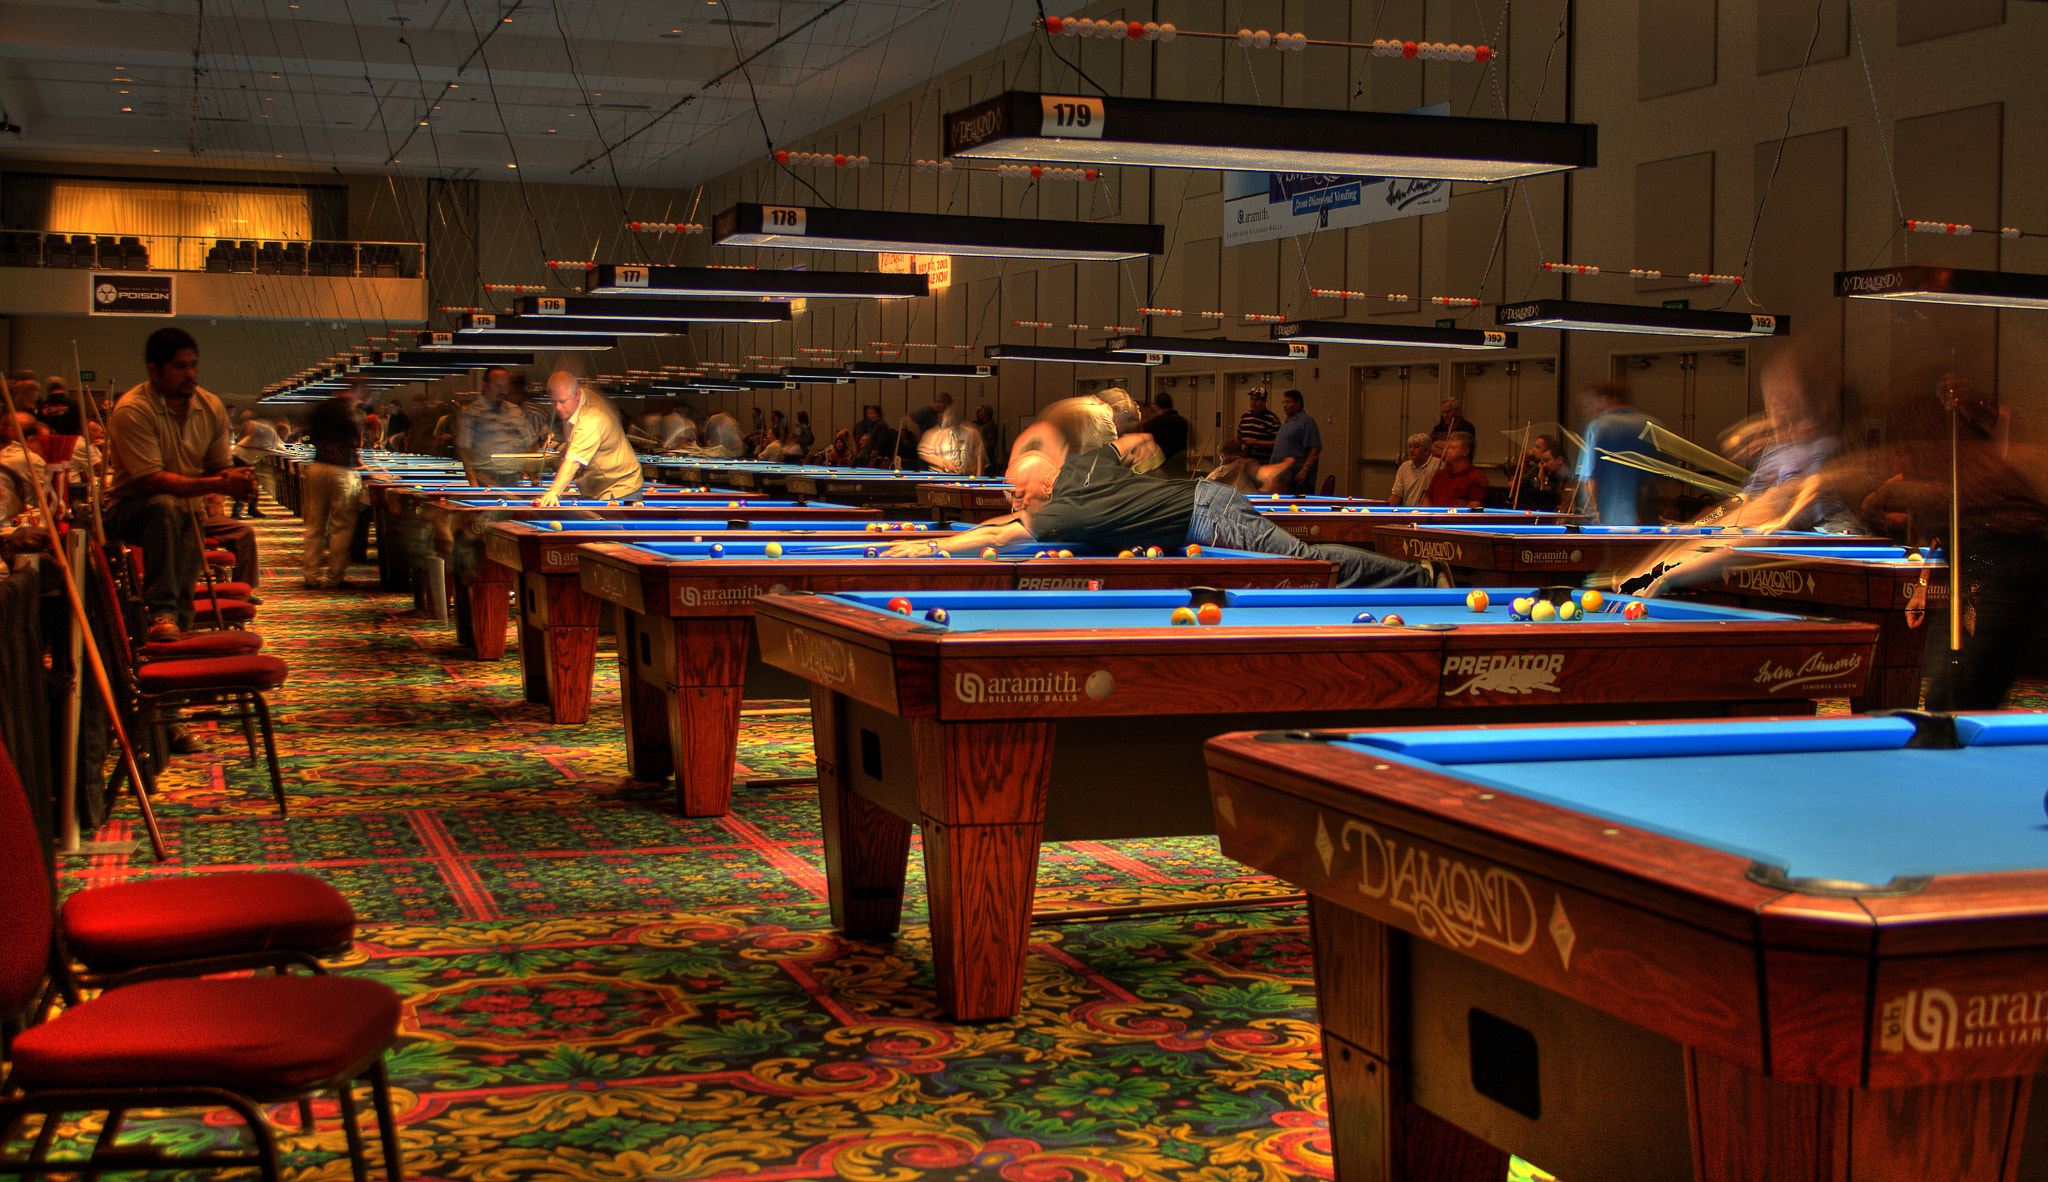 Las Vegas Pool Tournament by Blake Lyons Photo 4174525 / 500px